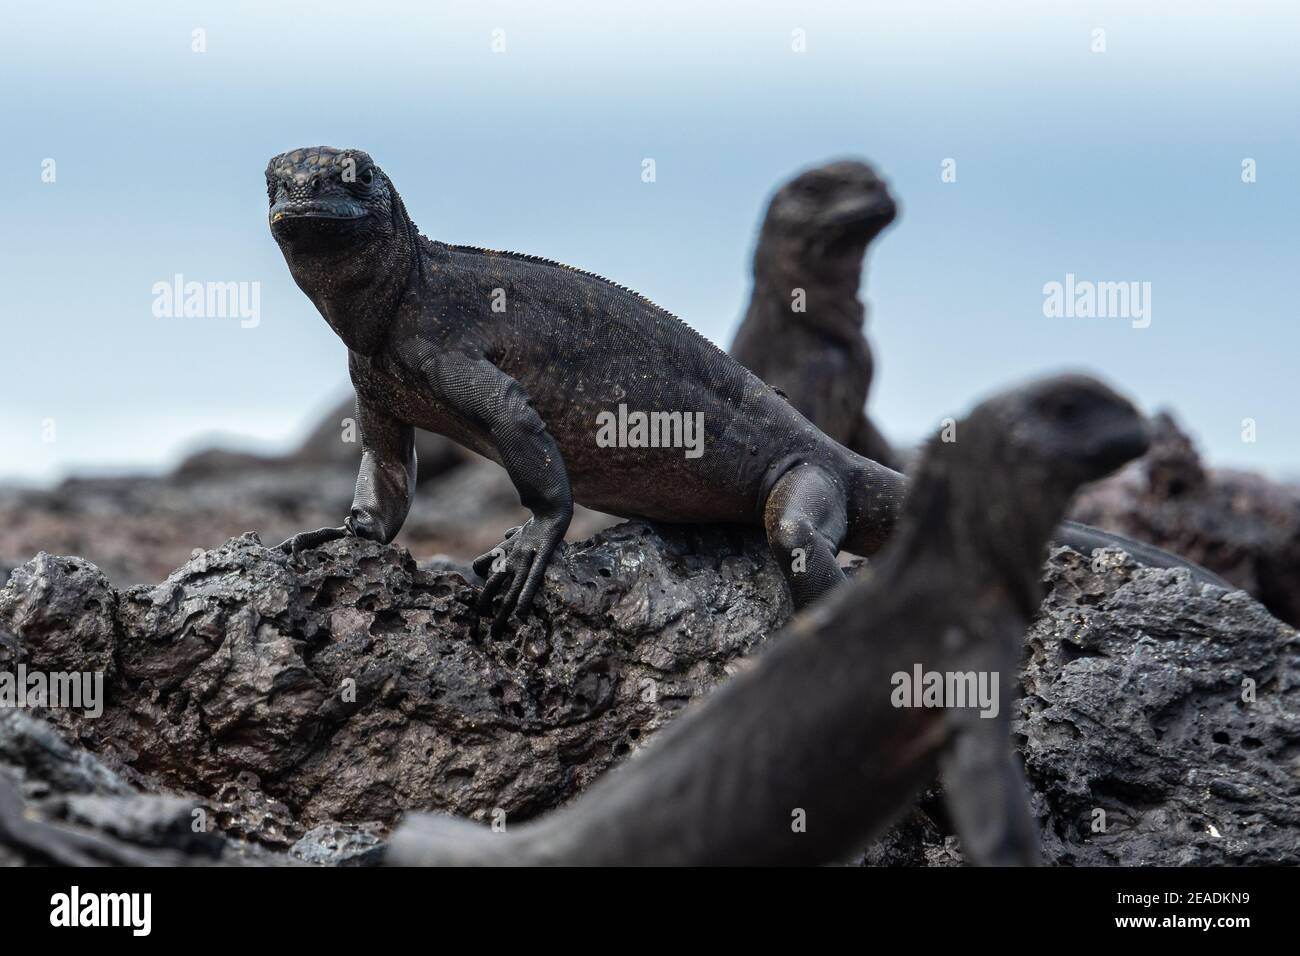 Galapagos marine iguanas, Isabela island, Ecuador Stock Photo